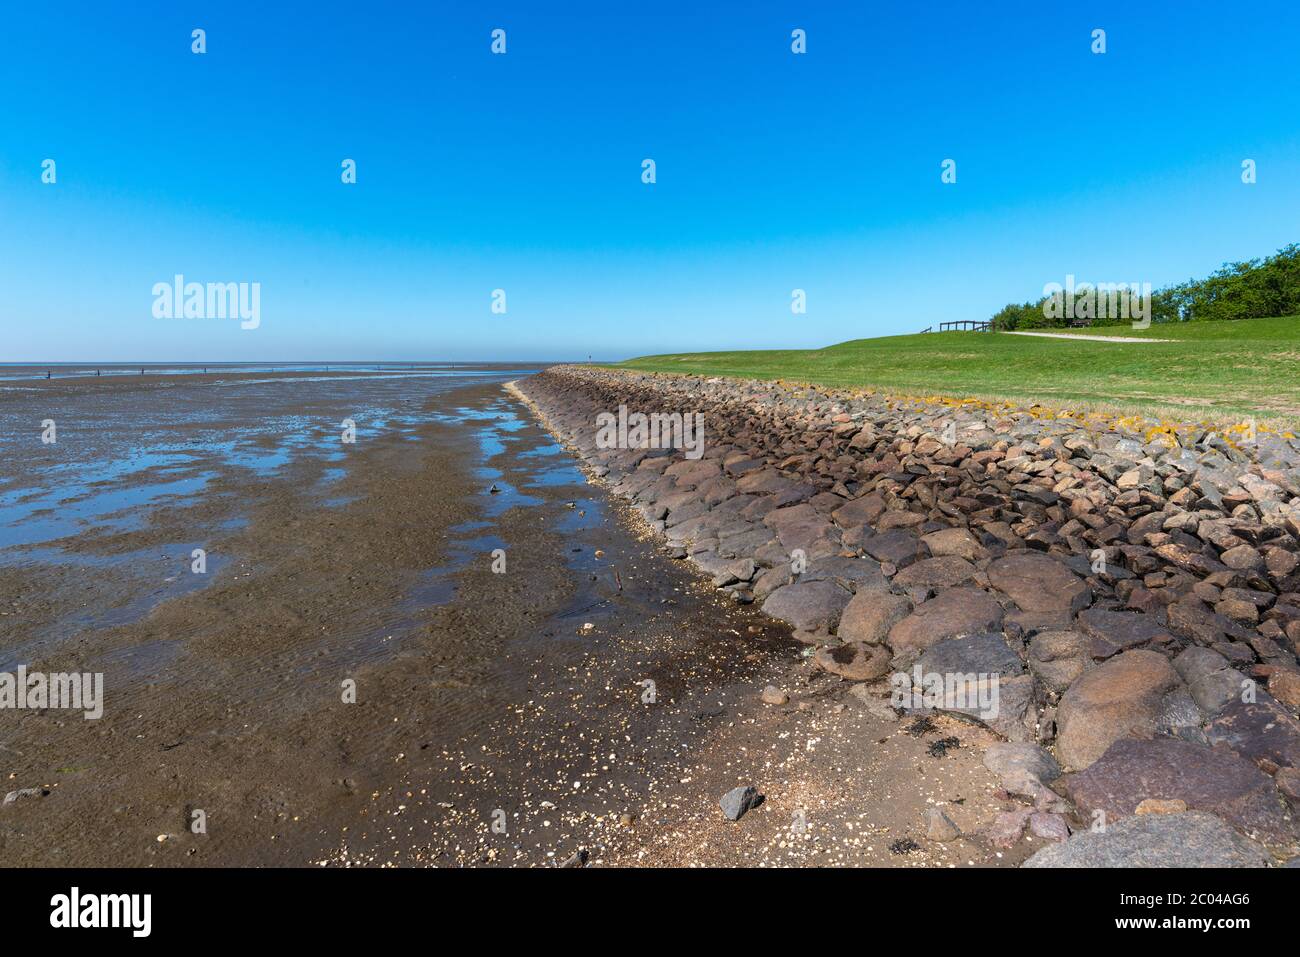 Île de Neuwerk, en mer du Nord, à 8 km du continent près de Cuxhaven, , Etat fédéral de Hambourg, Allemagne du Nord, Europe centrale, patrimoine mondial de l'UNESCO Banque D'Images